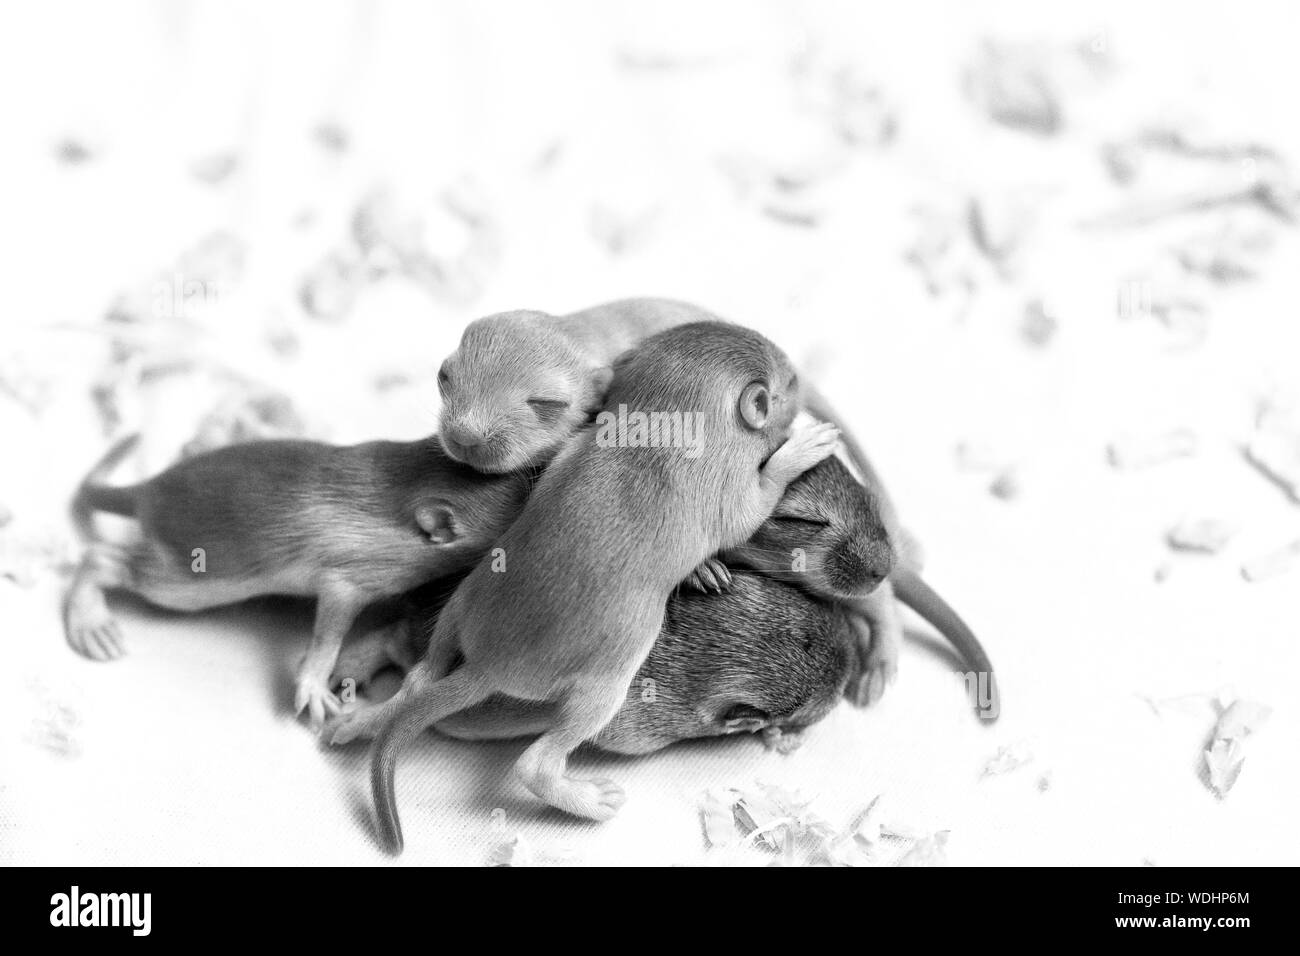 Schwarz-weiß Bild von kleinen niedlichen Mäuse Babys schlafen gepresst zusammen. Ansicht von oben Stockfoto